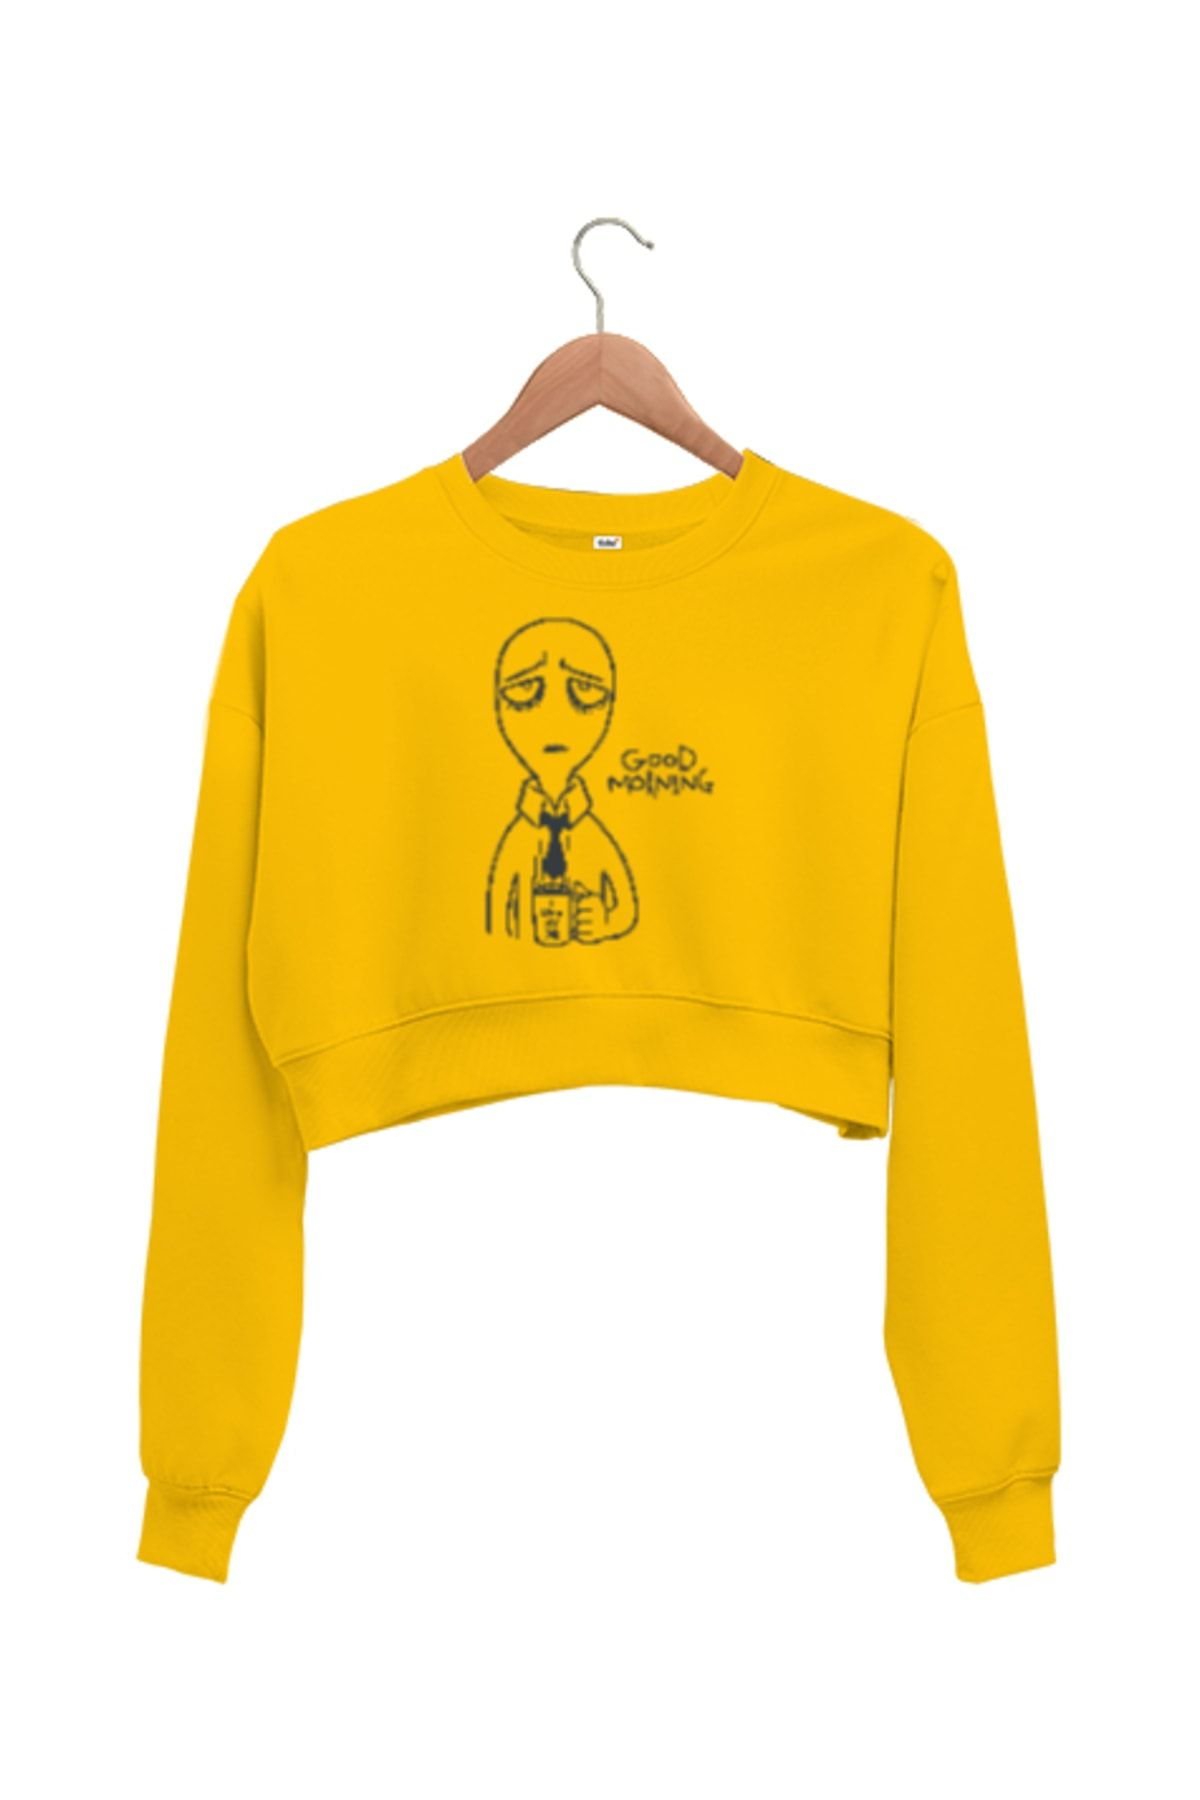 Tisho Good Morning - Günaydın Sarı Kadın Crop Sweatshirt